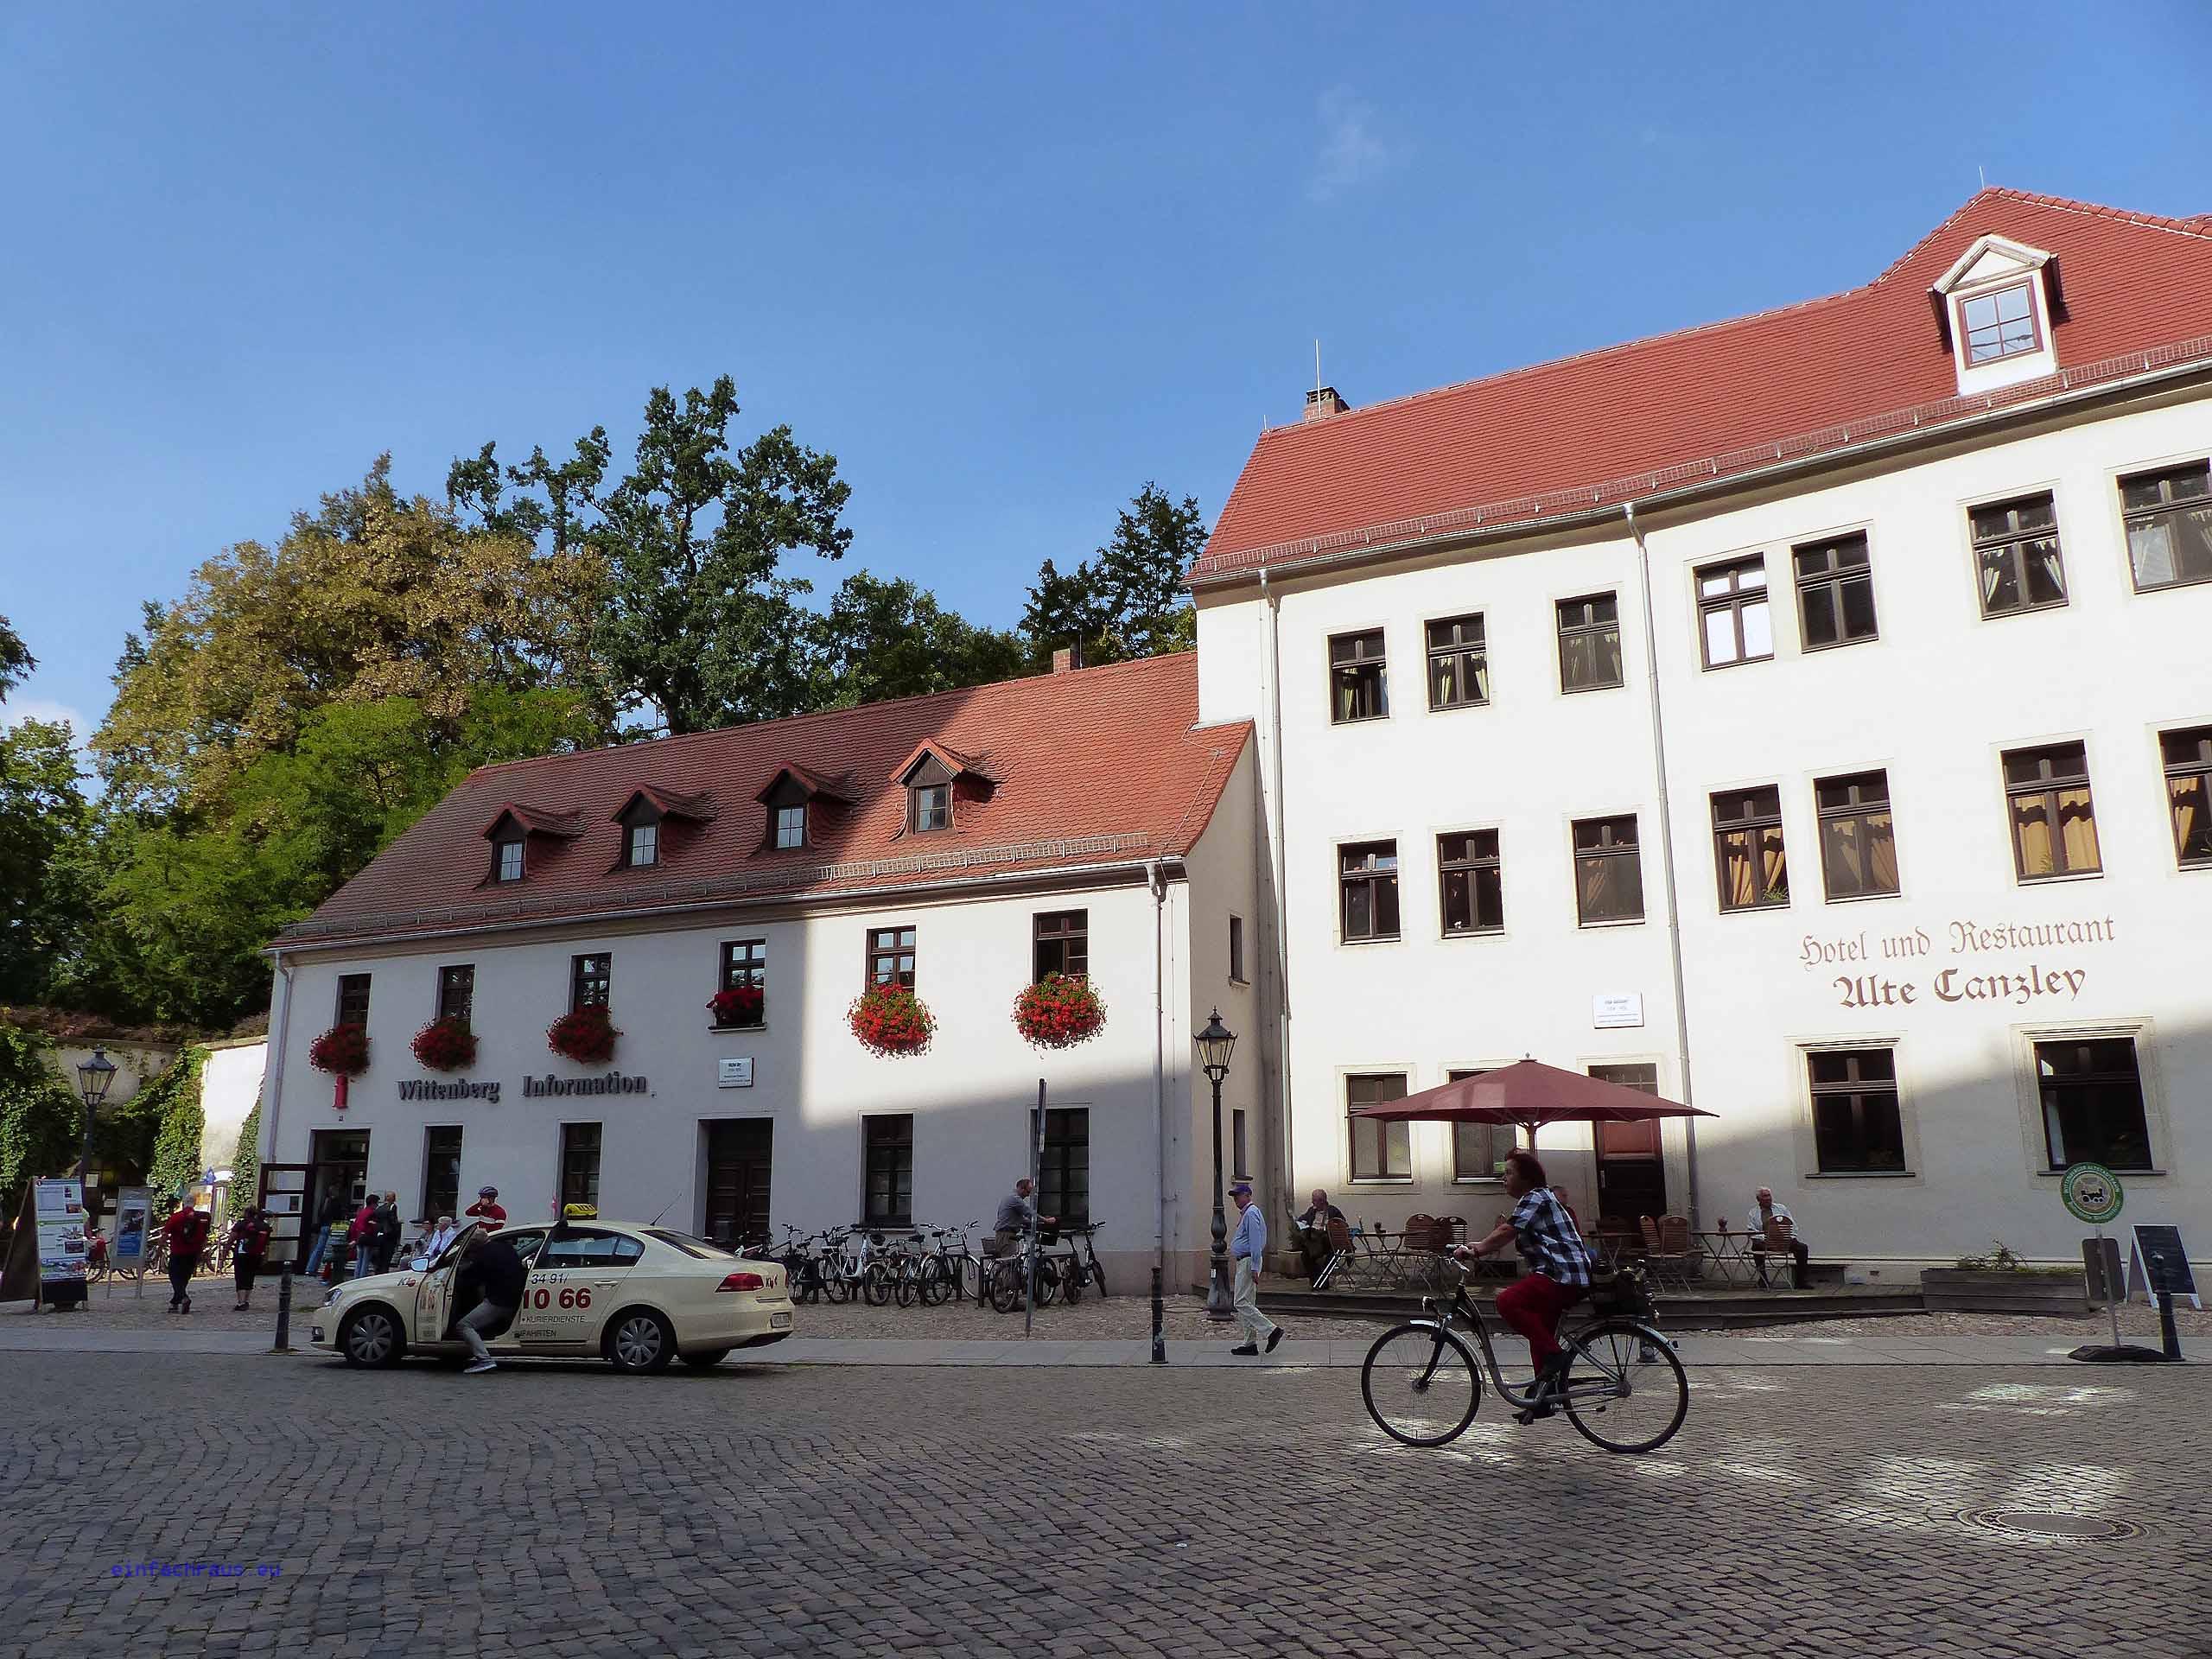 Wittenberg Information und Hotel Alte Canzley, Foto: Weirauch